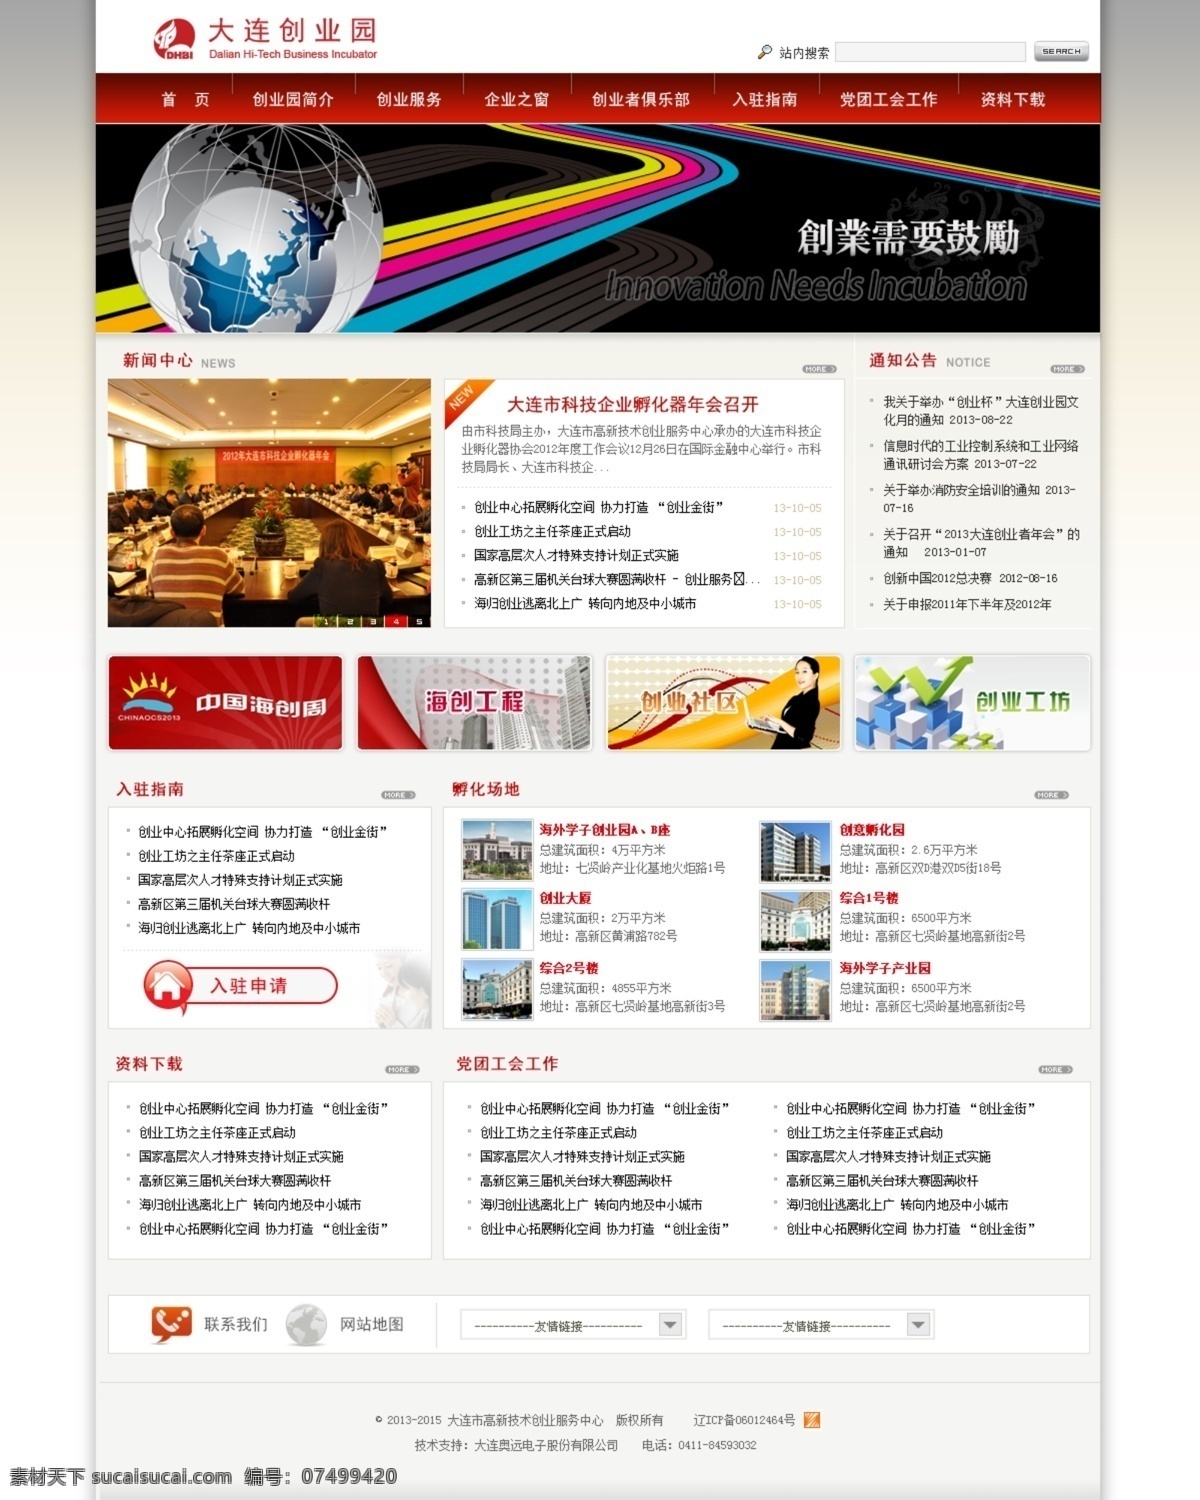 大气 横版 横幅 红色 灰色 简约 宽版 政府网站 模板下载 政府 网站 展示 中文模板 网页模板 源文件 网页素材